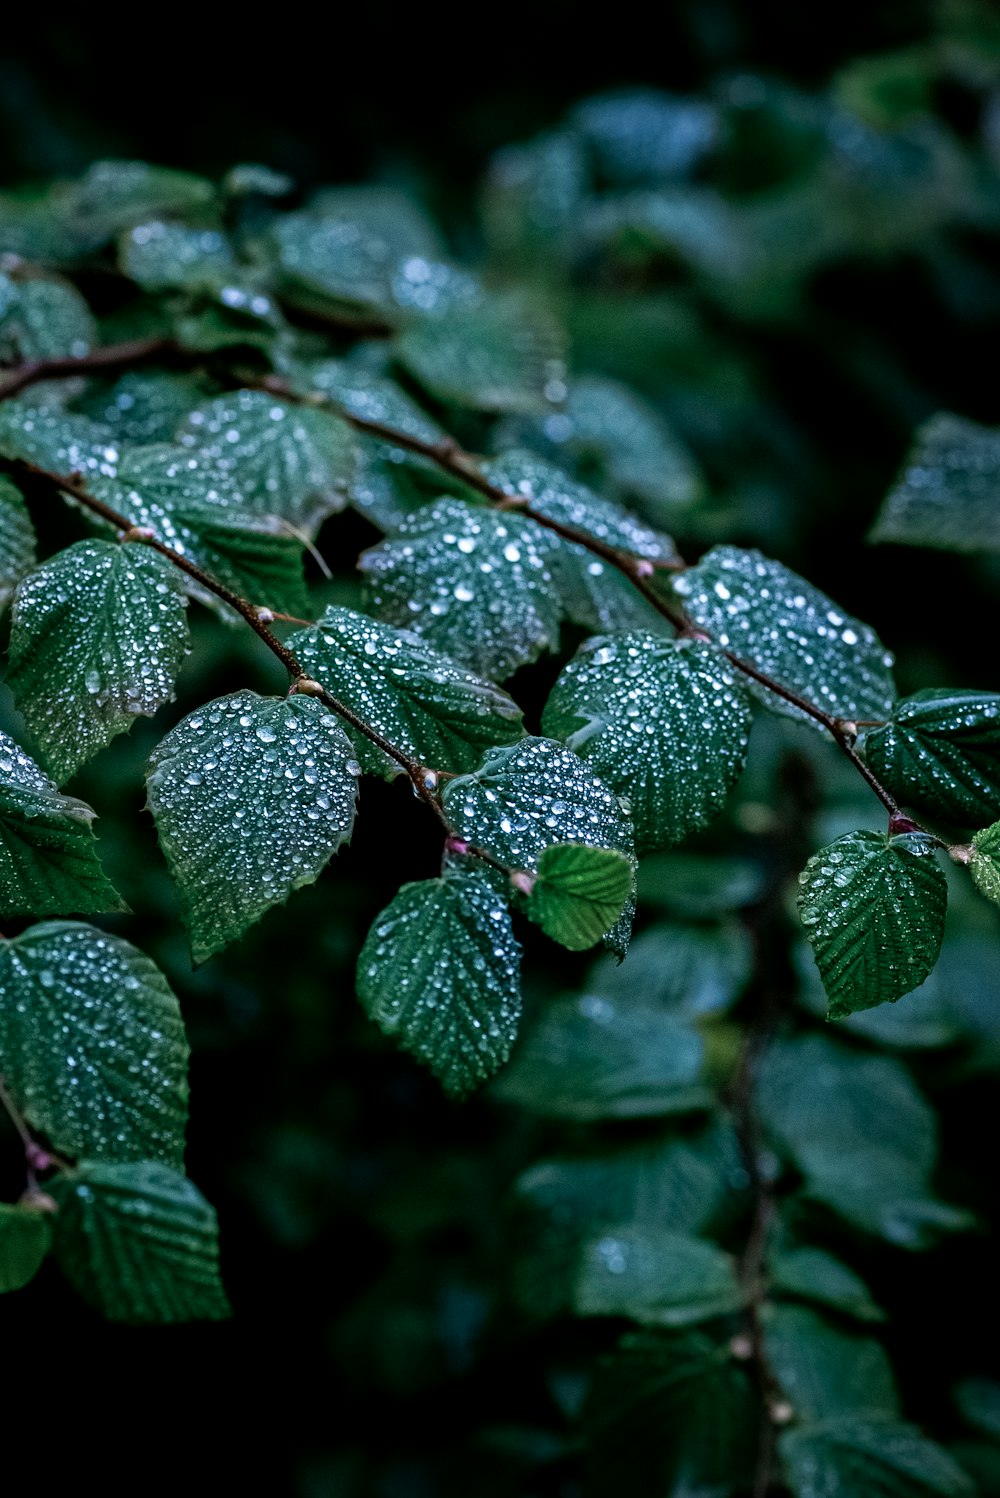 um close up de folhas com gotículas de água sobre elas